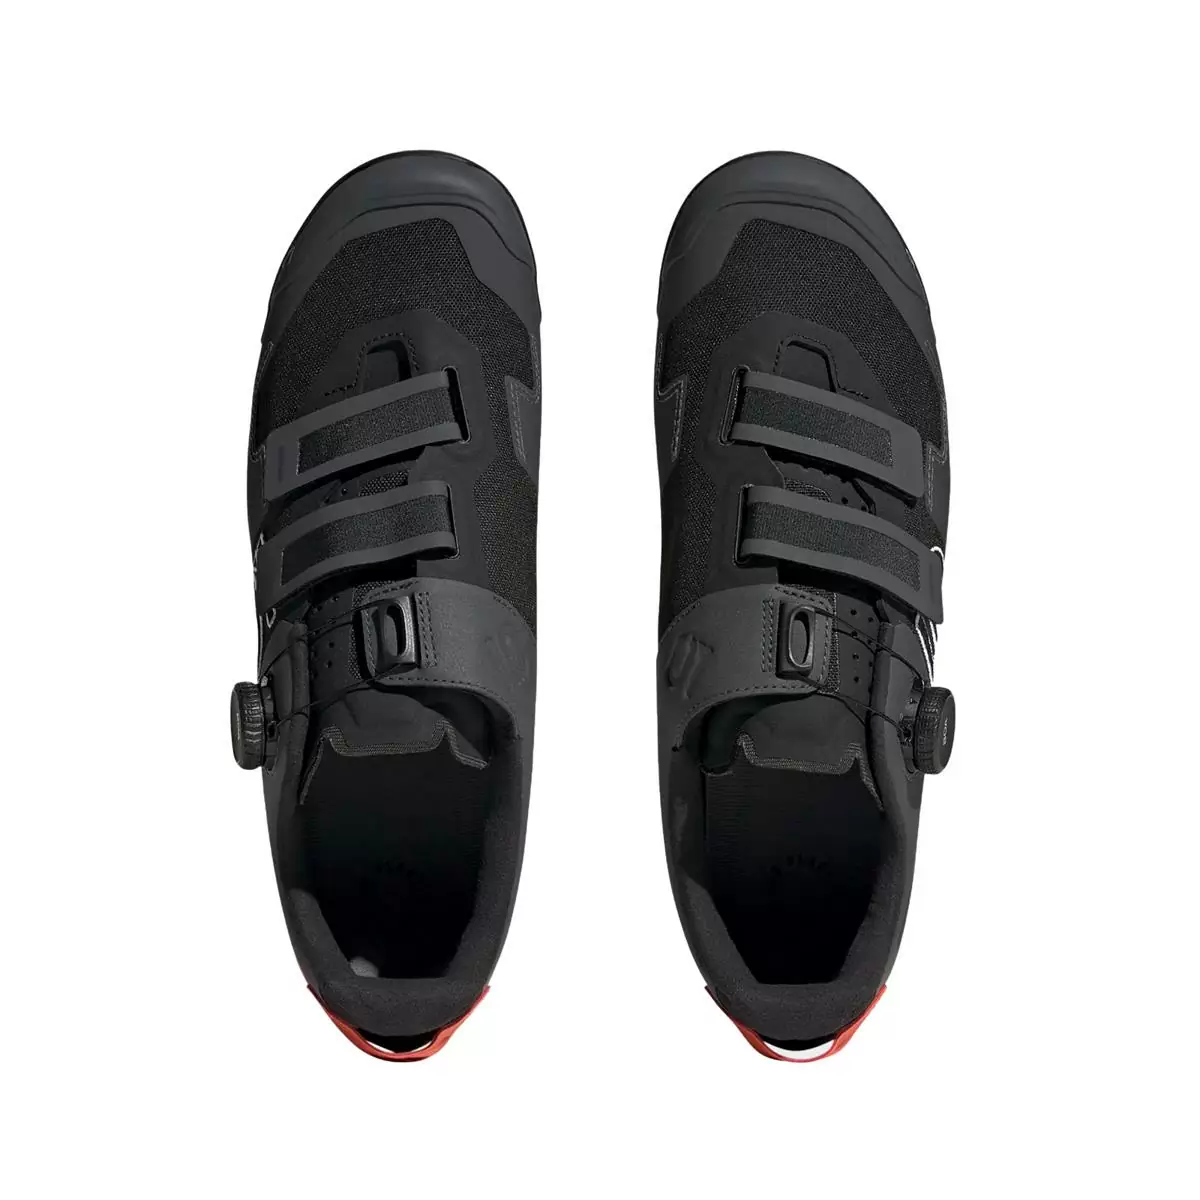 Clip 5.10 Kestrel Boa MTB Shoes Black/Orange Size 41 #3